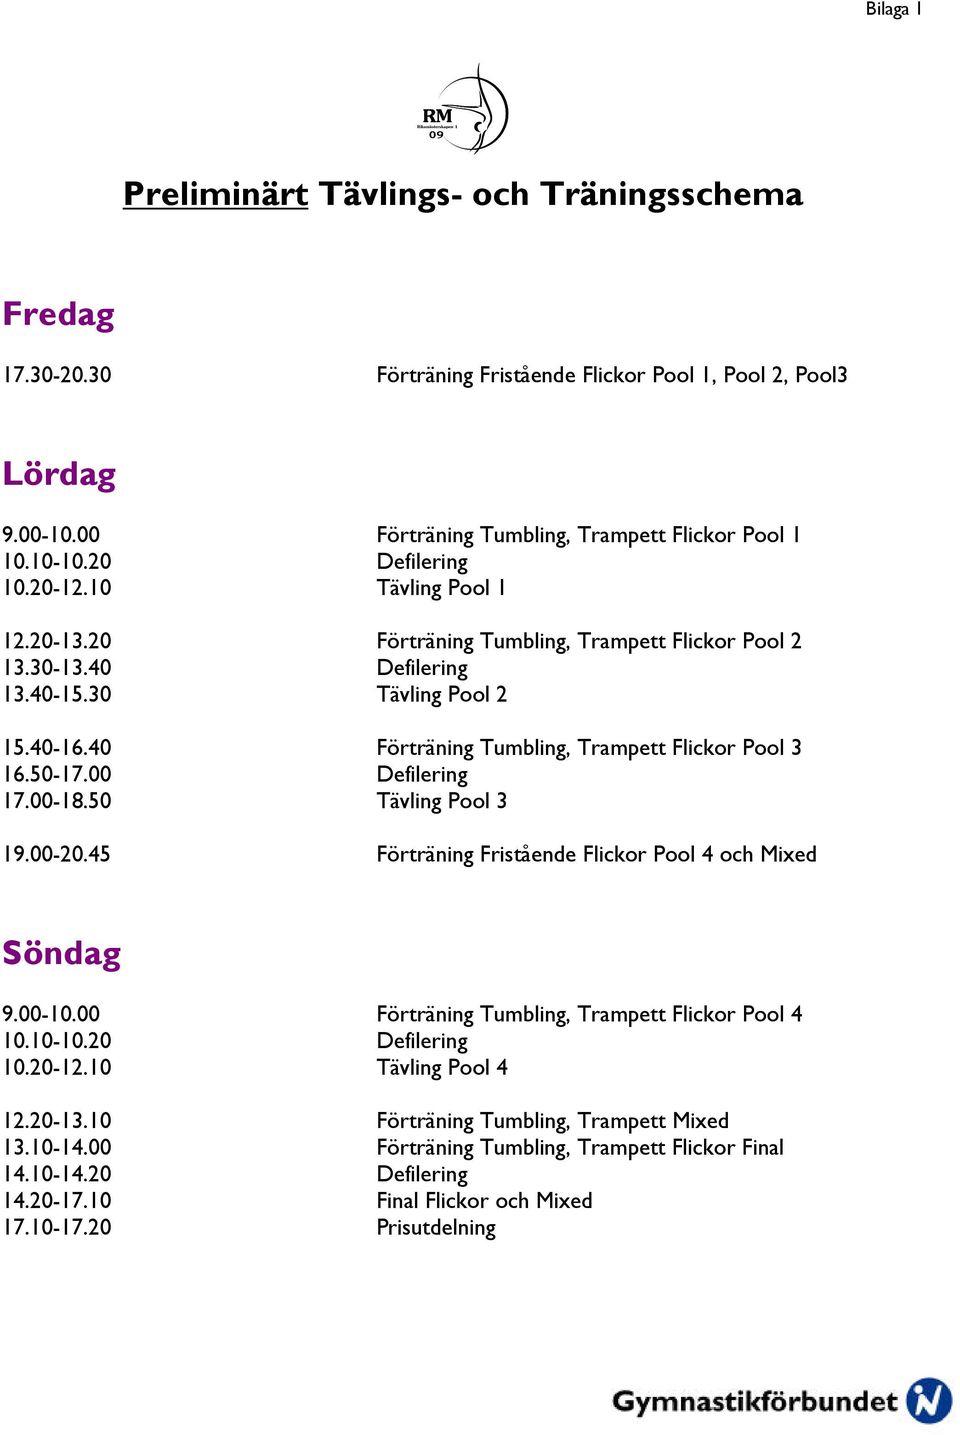 40 Förträning Tumbling, Trampett Flickor Pool 3 16.50-17.00 Defilering 17.00-18.50 Tävling Pool 3 19.00-20.45 Förträning Fristående Flickor Pool 4 och Mixed Söndag 9.00-10.